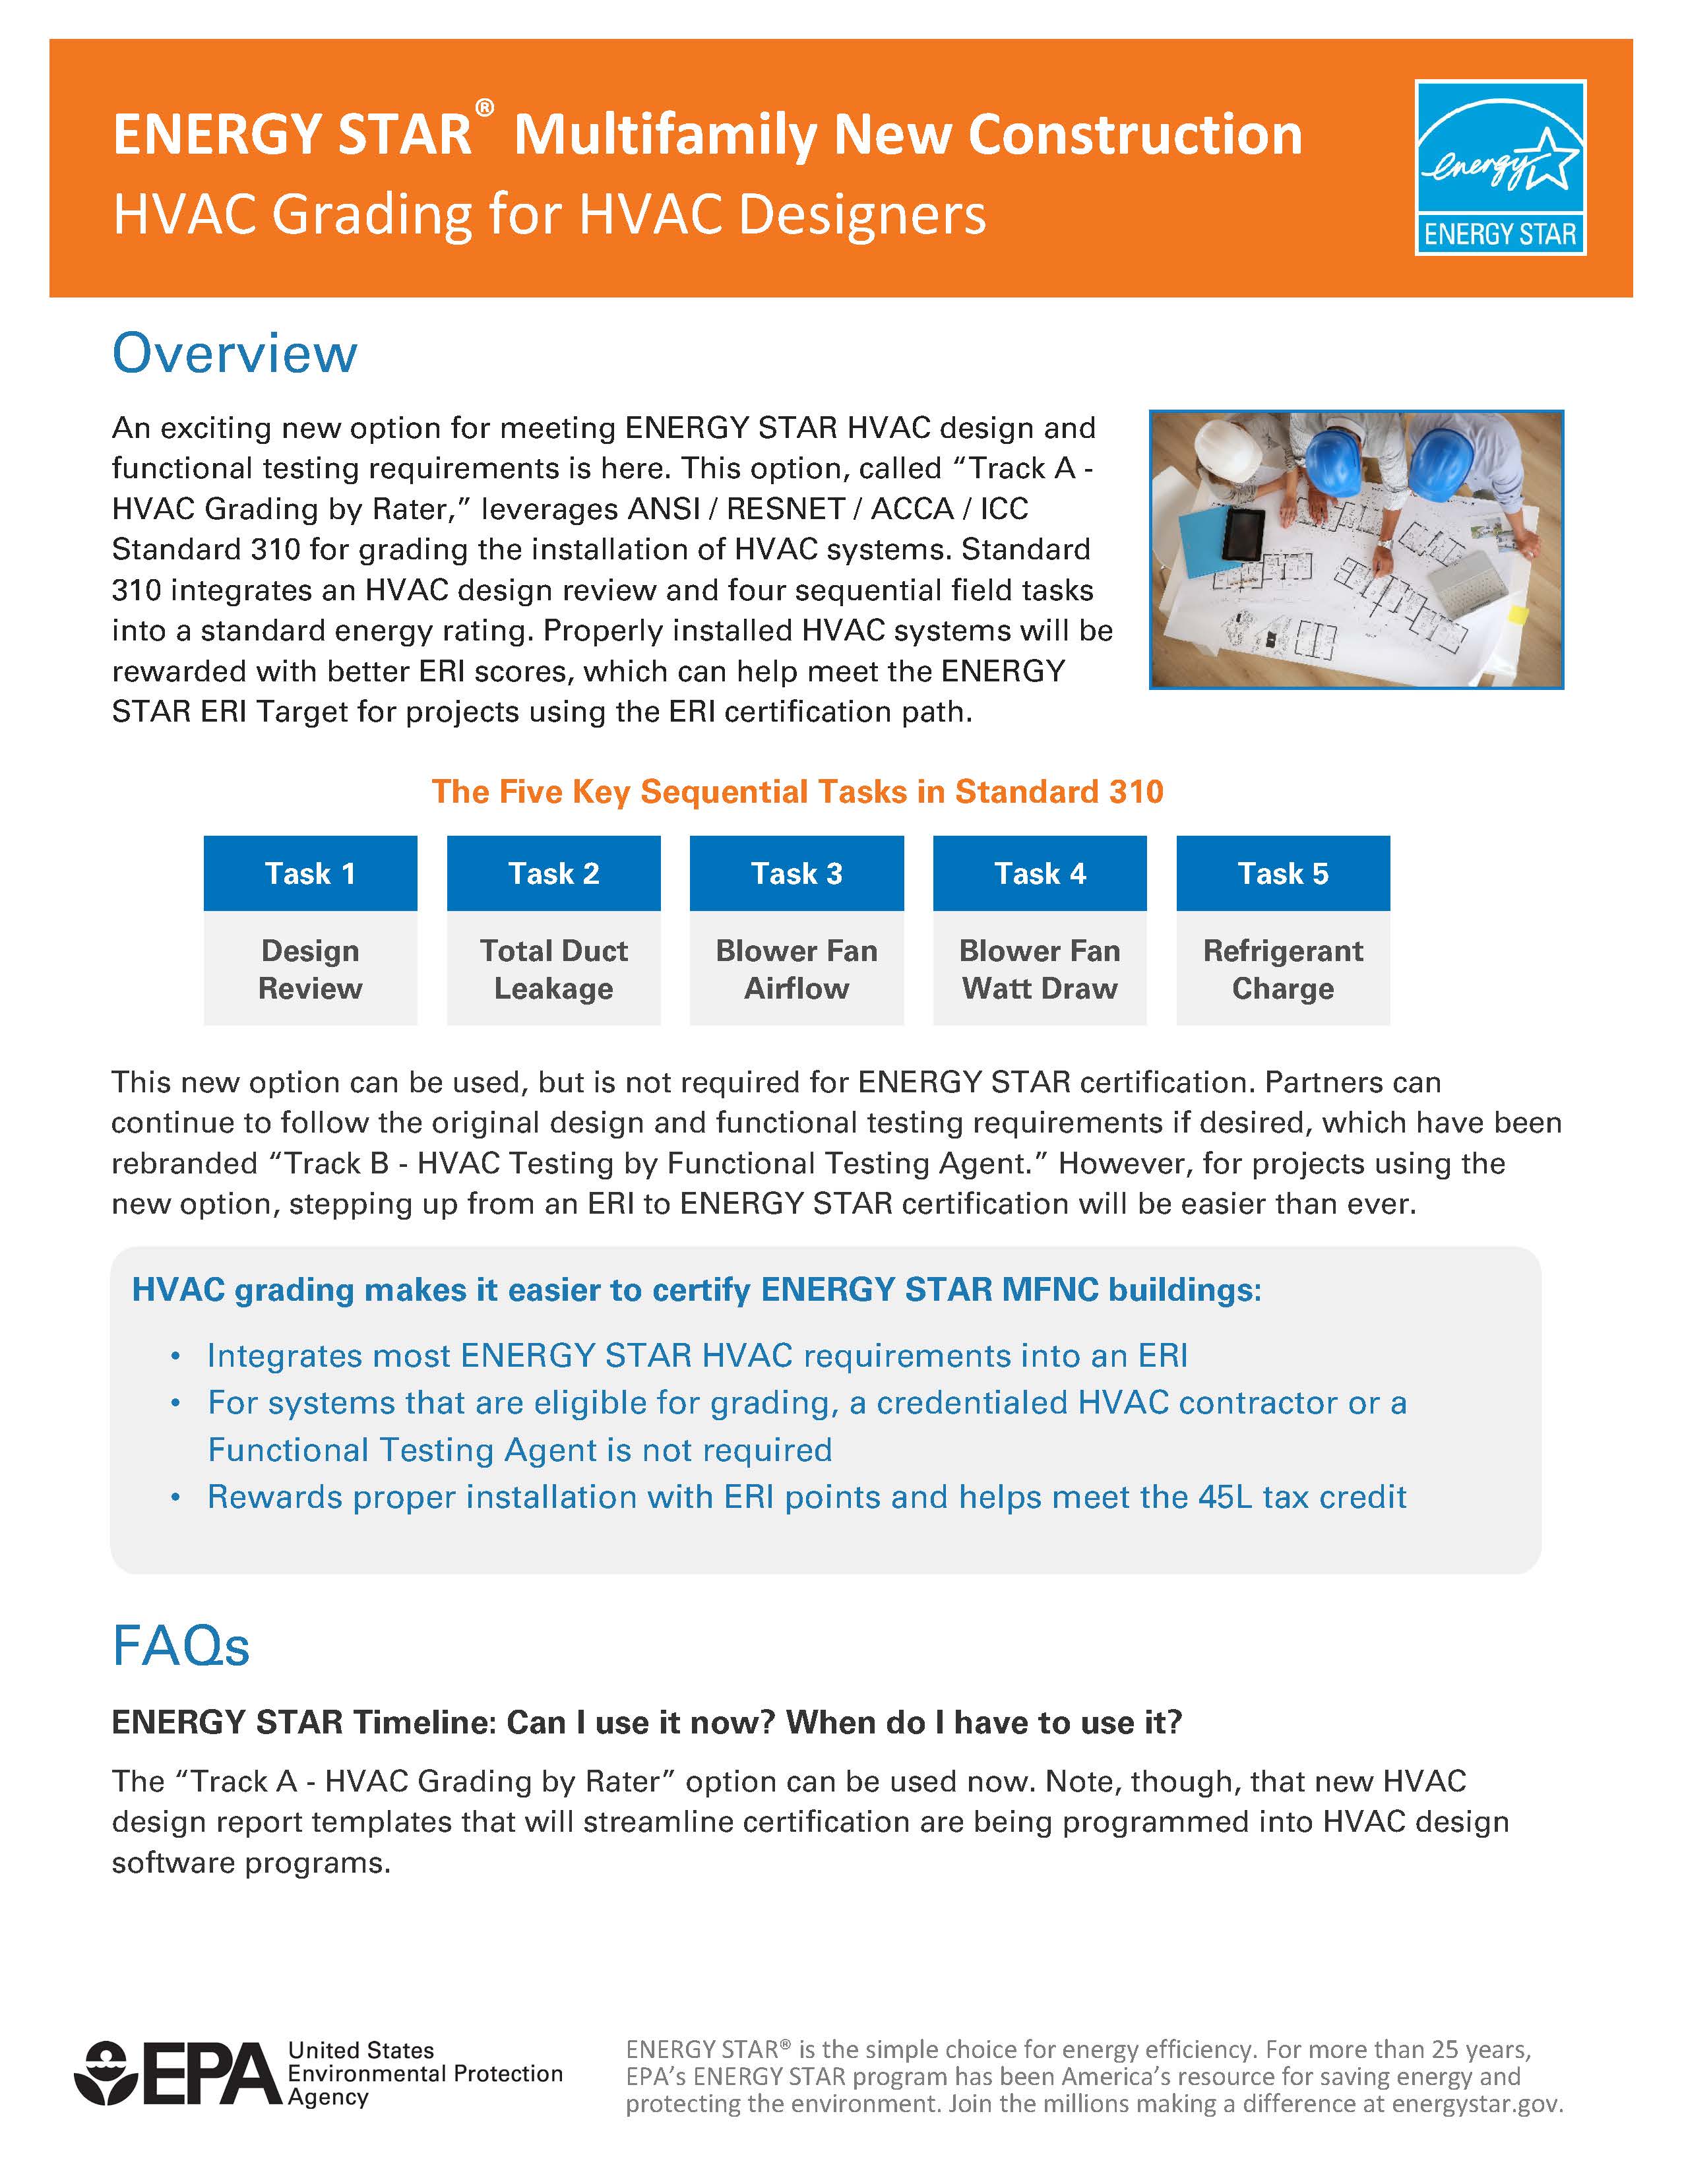 HVAC Grading for HVAC Designers Fact Sheet – ENERGY STAR Multifamily New Construction